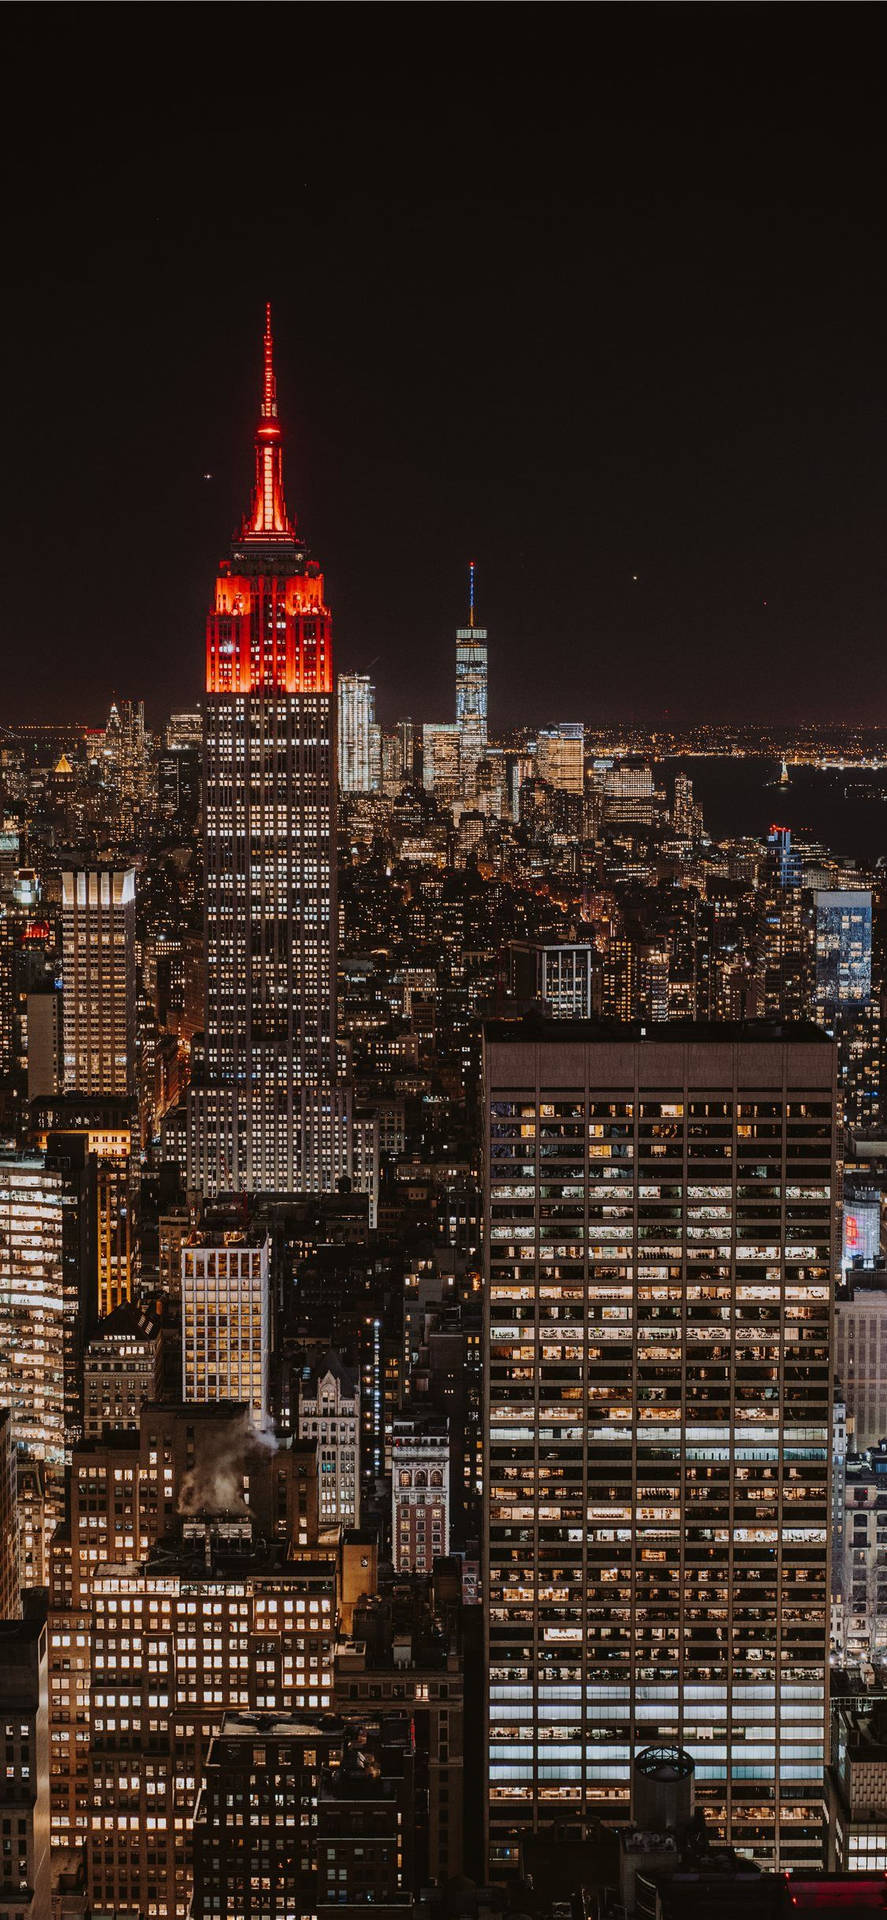 Fondode Pantalla De Iphone De Nueva York: Skyline Del Empire State Building De Noche. Fondo de pantalla